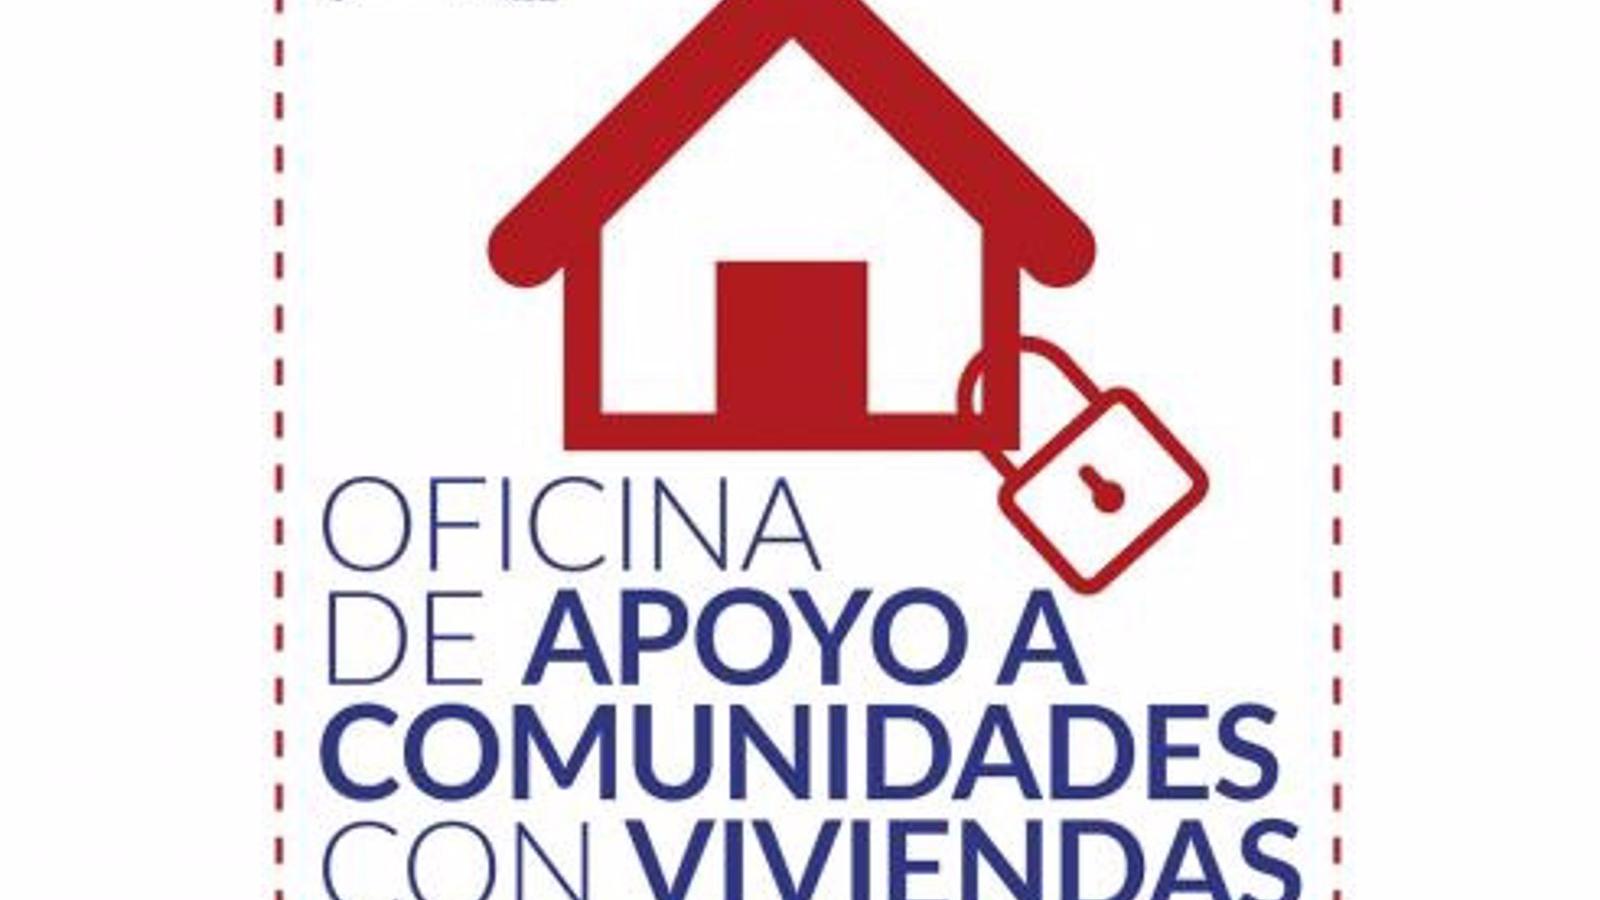 El Pleno de Torrejón aprueba pedir al Gobierno que endurezca leyes para evitar la ocupación ilegales de viviendas y naves